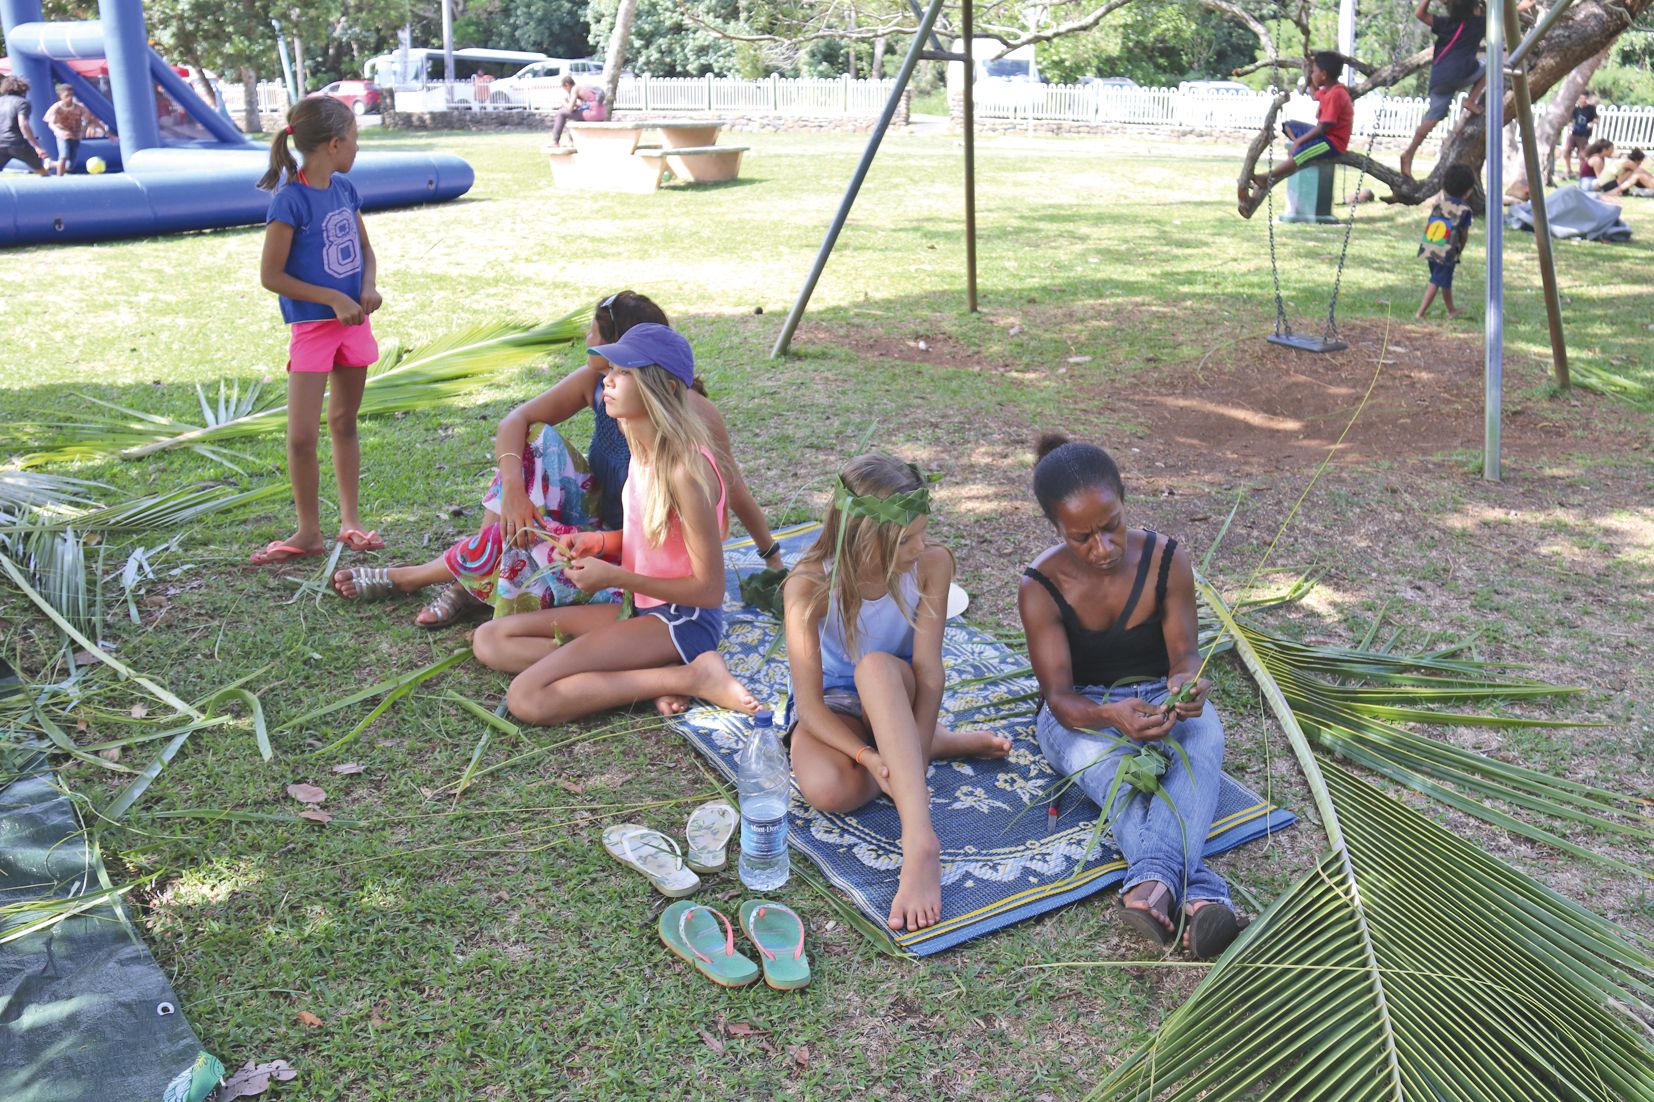 En plus du sport, un atelier de tressage sur feuilles de cocotier est proposé sur la plage. Différents jeux de société sont également disponibles sur place pour les jeunes inscrits.